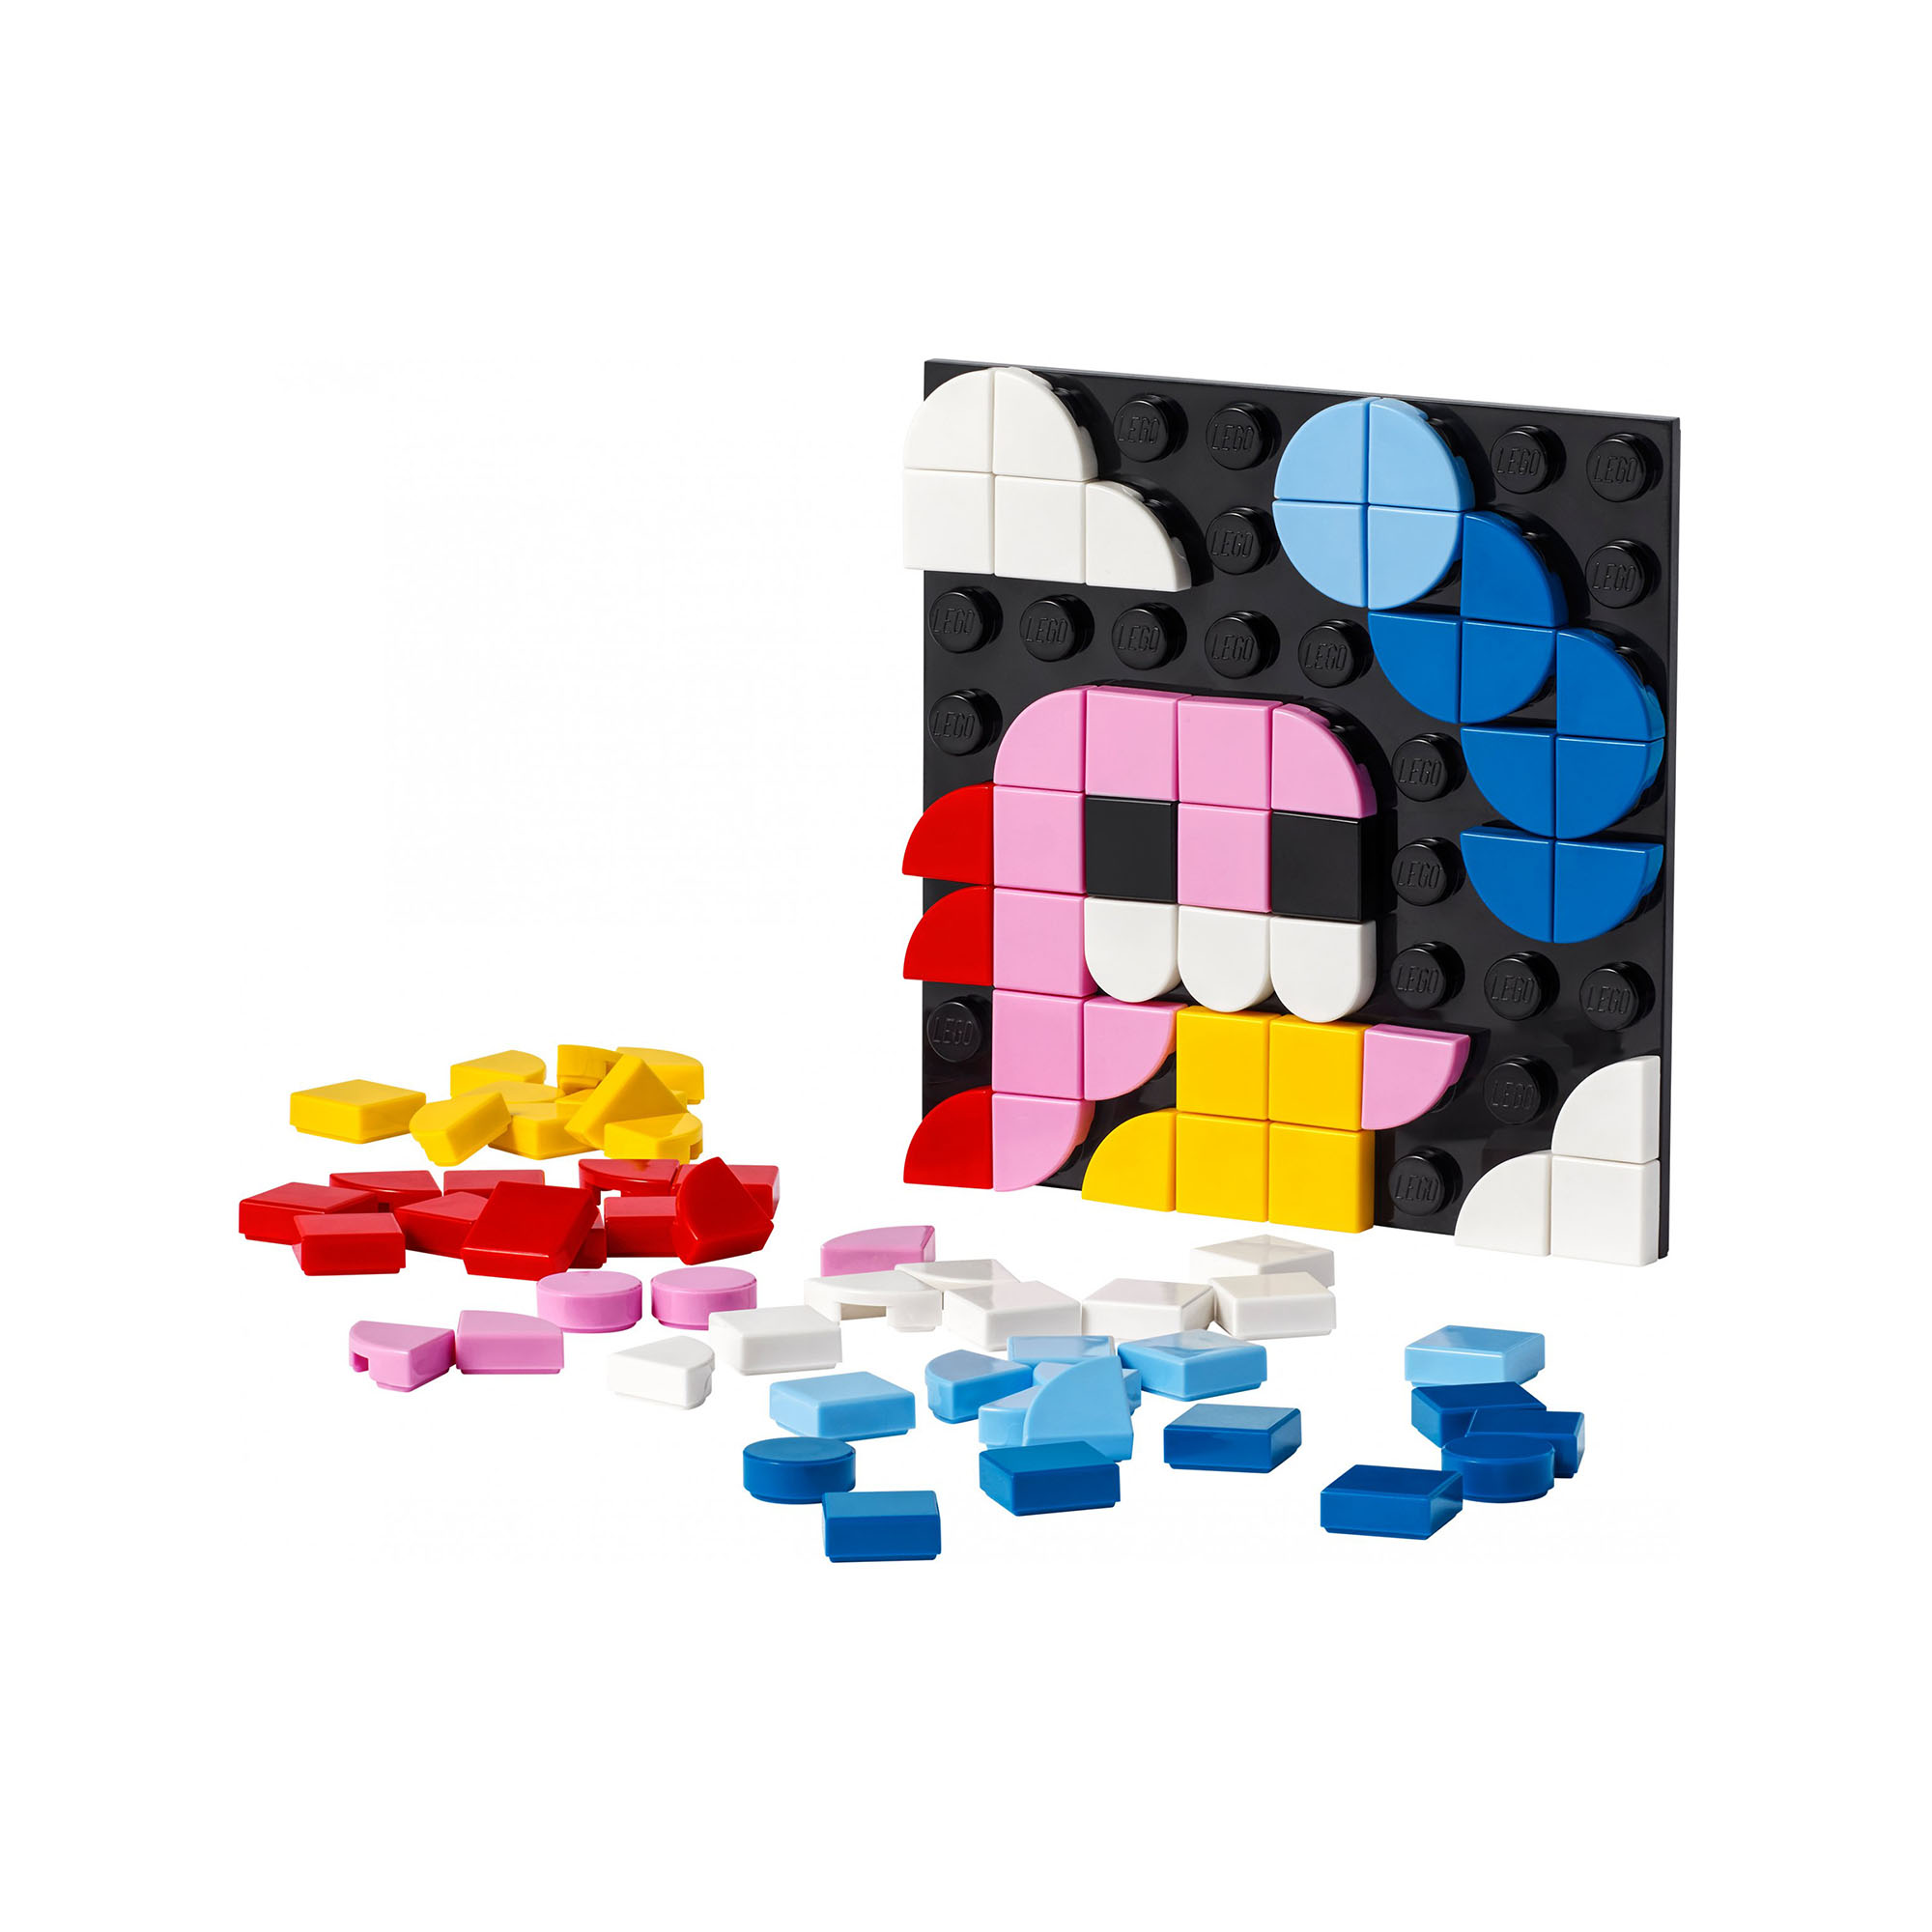 LEGO DOTS Patch Adesiva, Set Fai da Te con Toppa Adesiva, Regalo Creativo, Decor 41954, , large